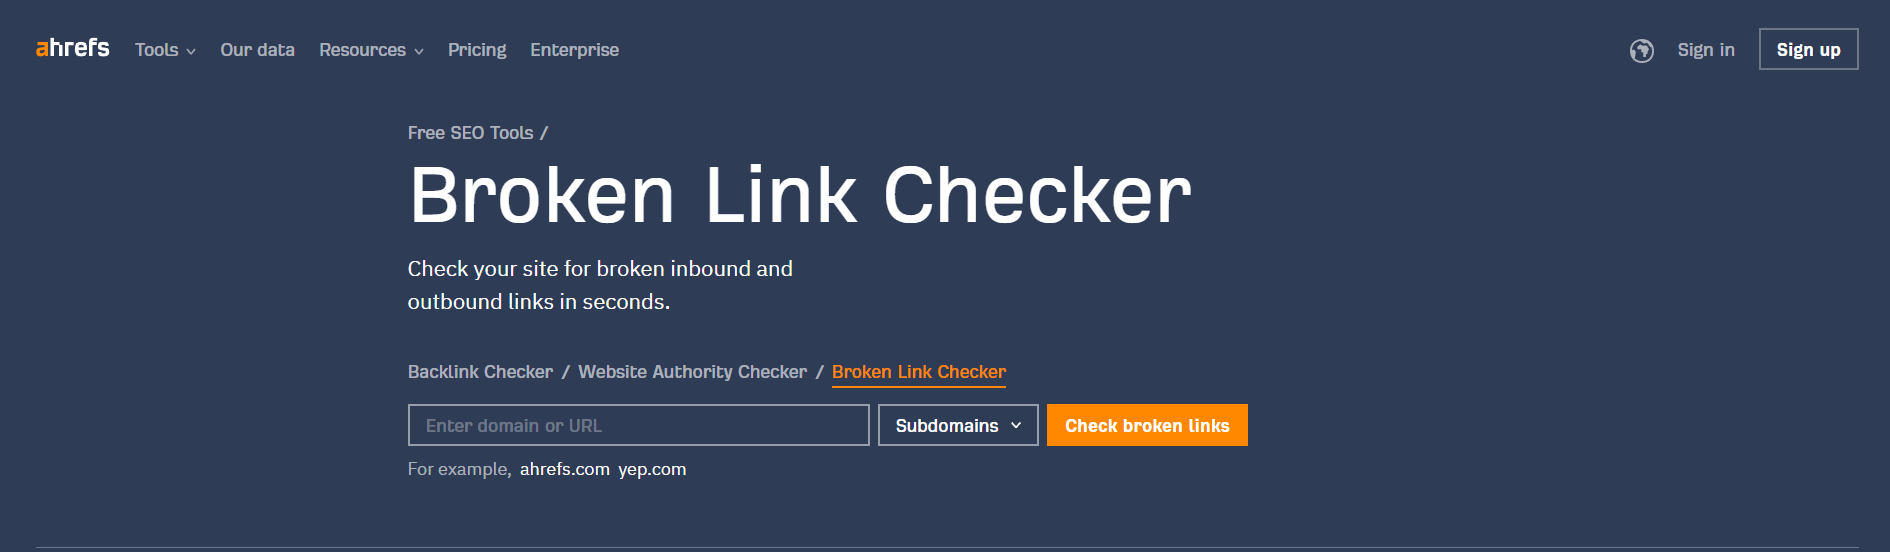 Broken link checker tool